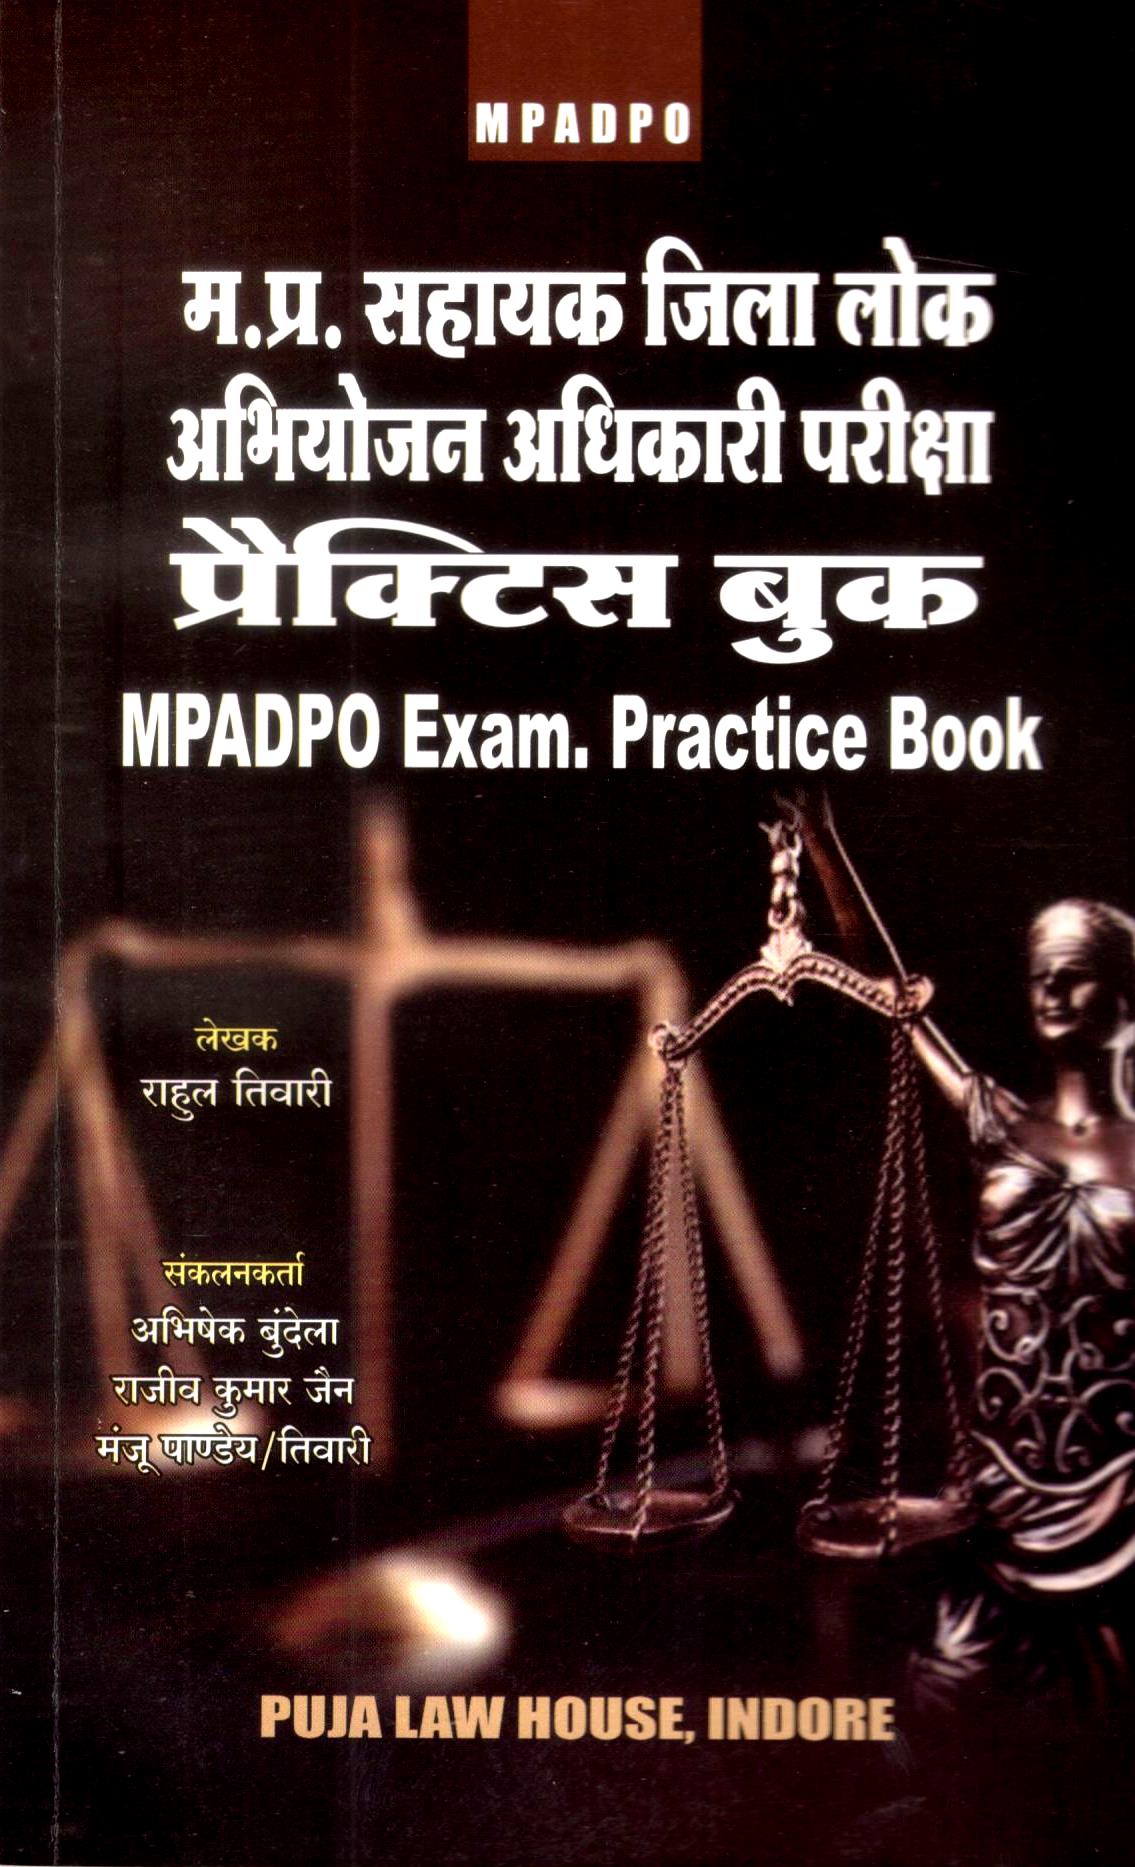 म. प्र. सहायक जिला लोक अभियोजन अधिकारी परीक्षा प्रैक्टिस बुक / M.P.A.D.P.O. Exam Practice Book